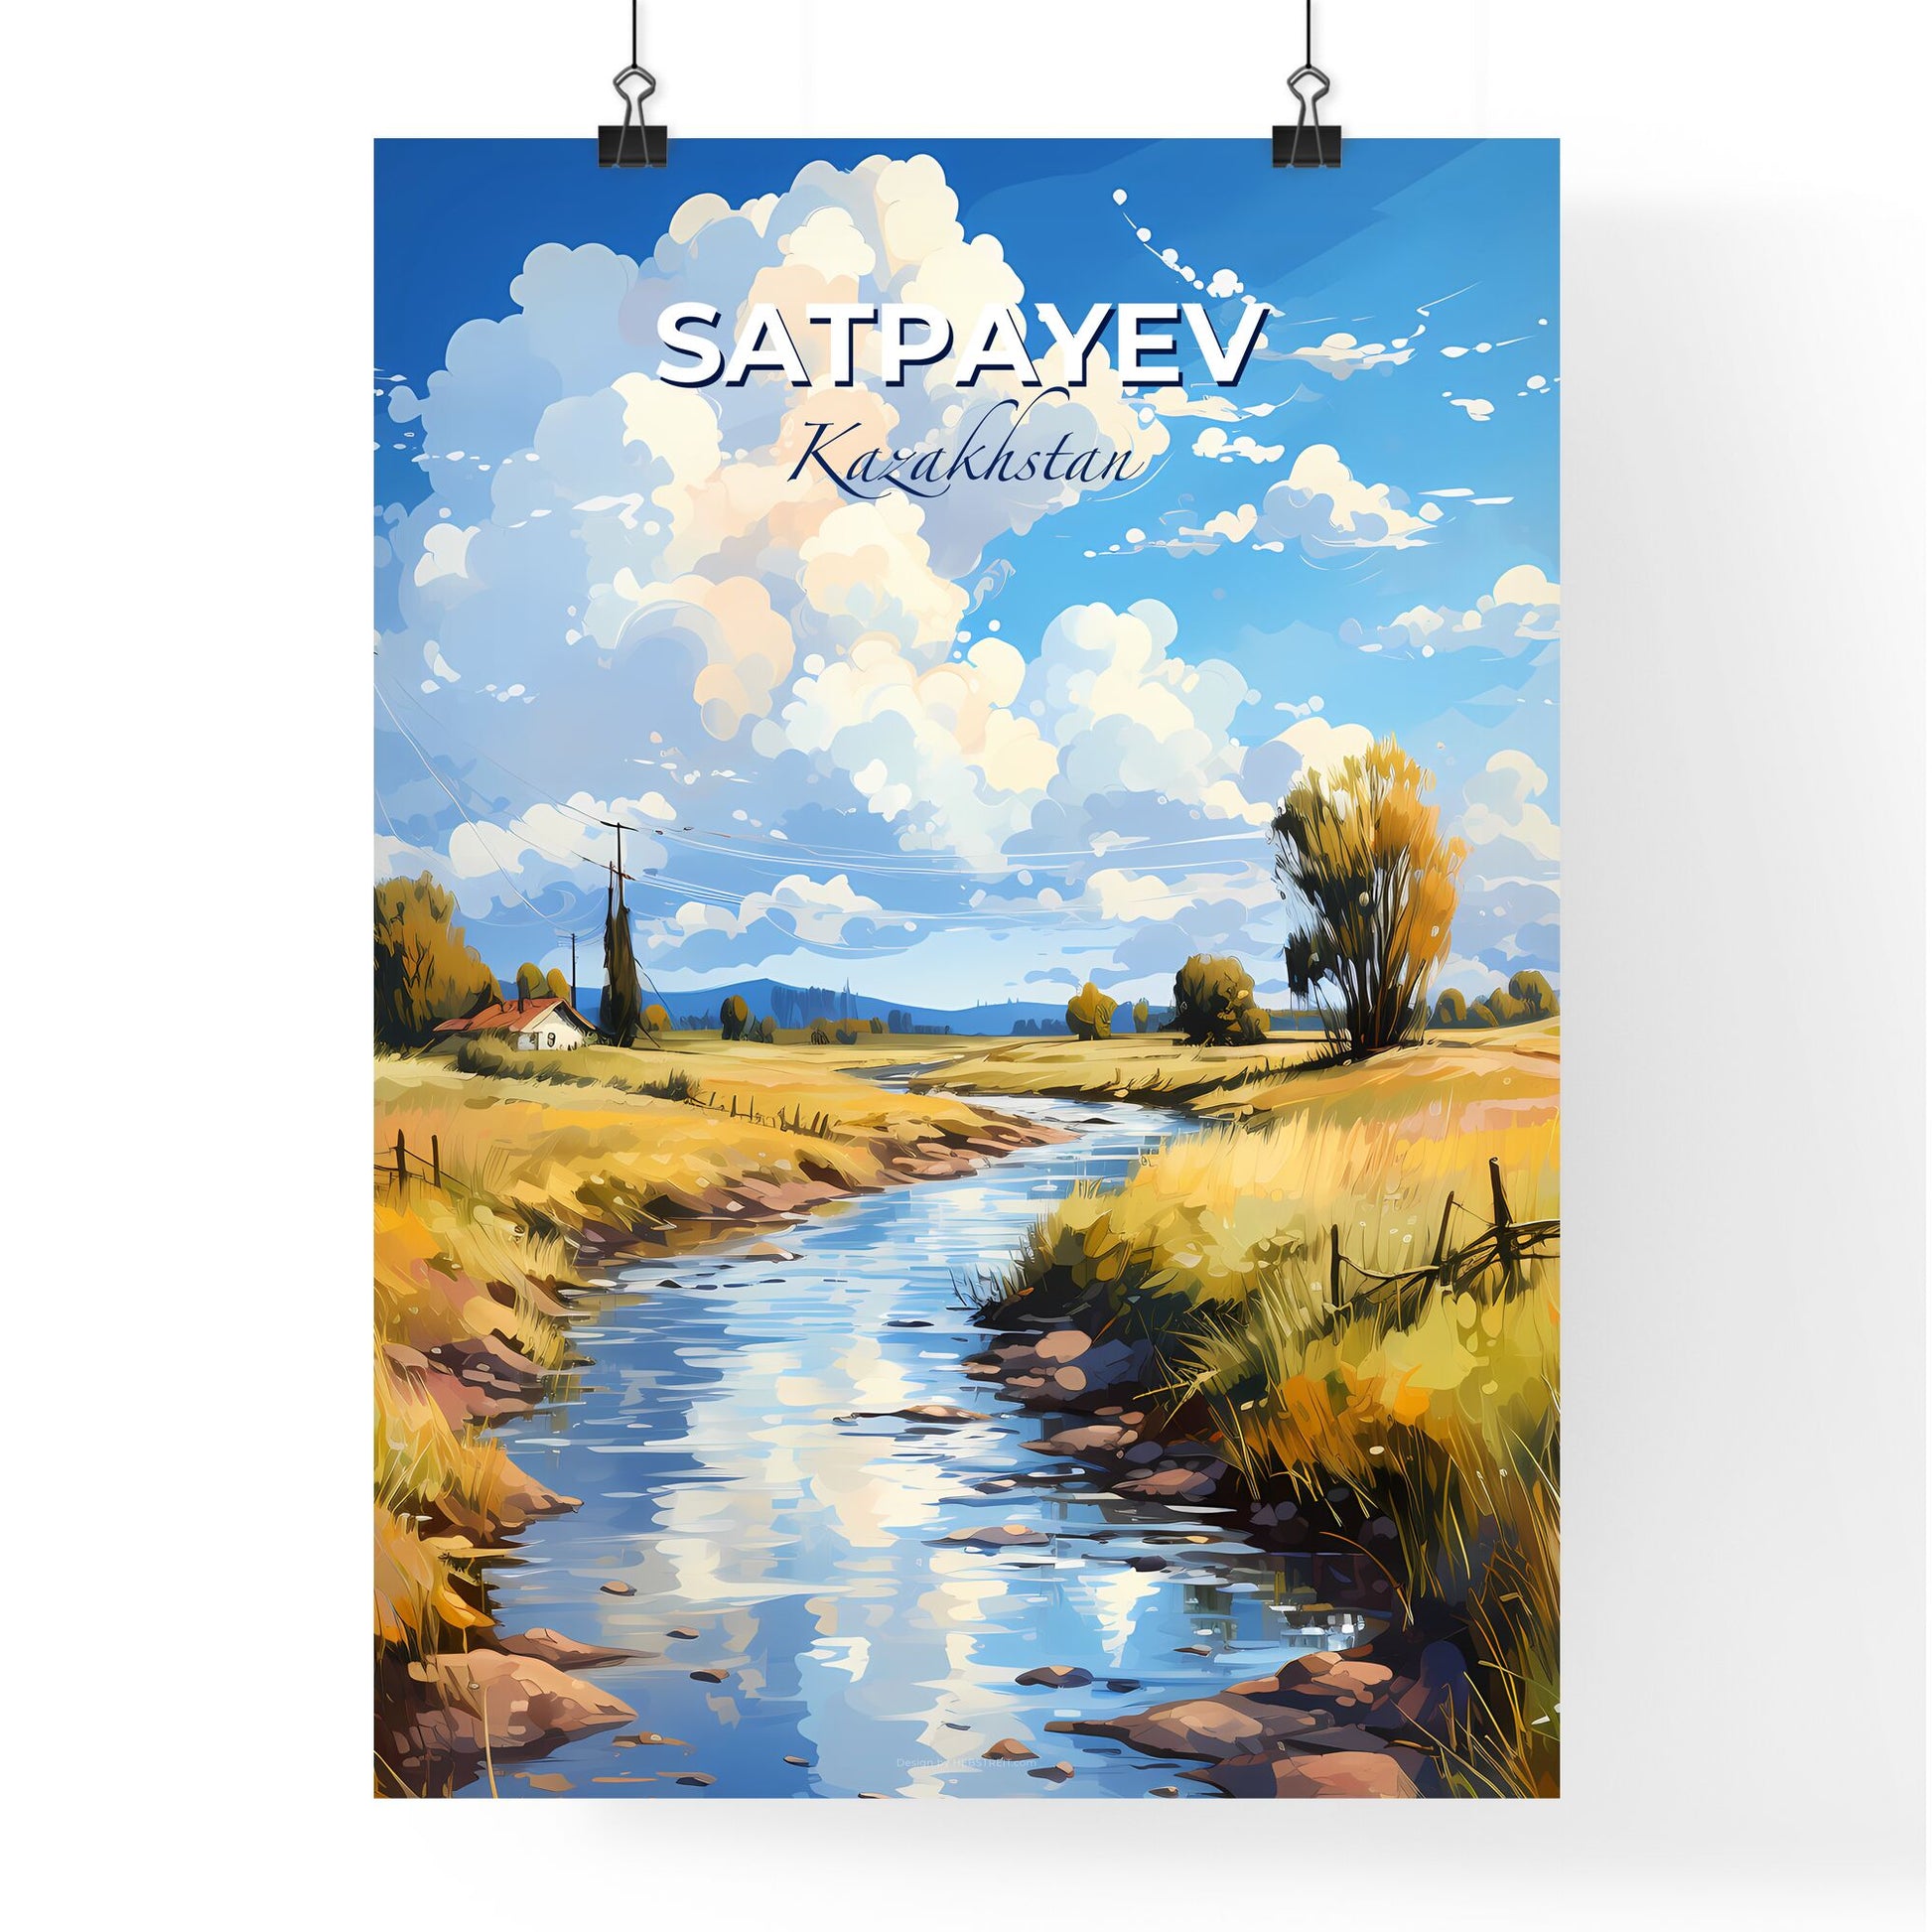 Satpayev, Kazakhstan, A Poster of a river running through a field Default Title